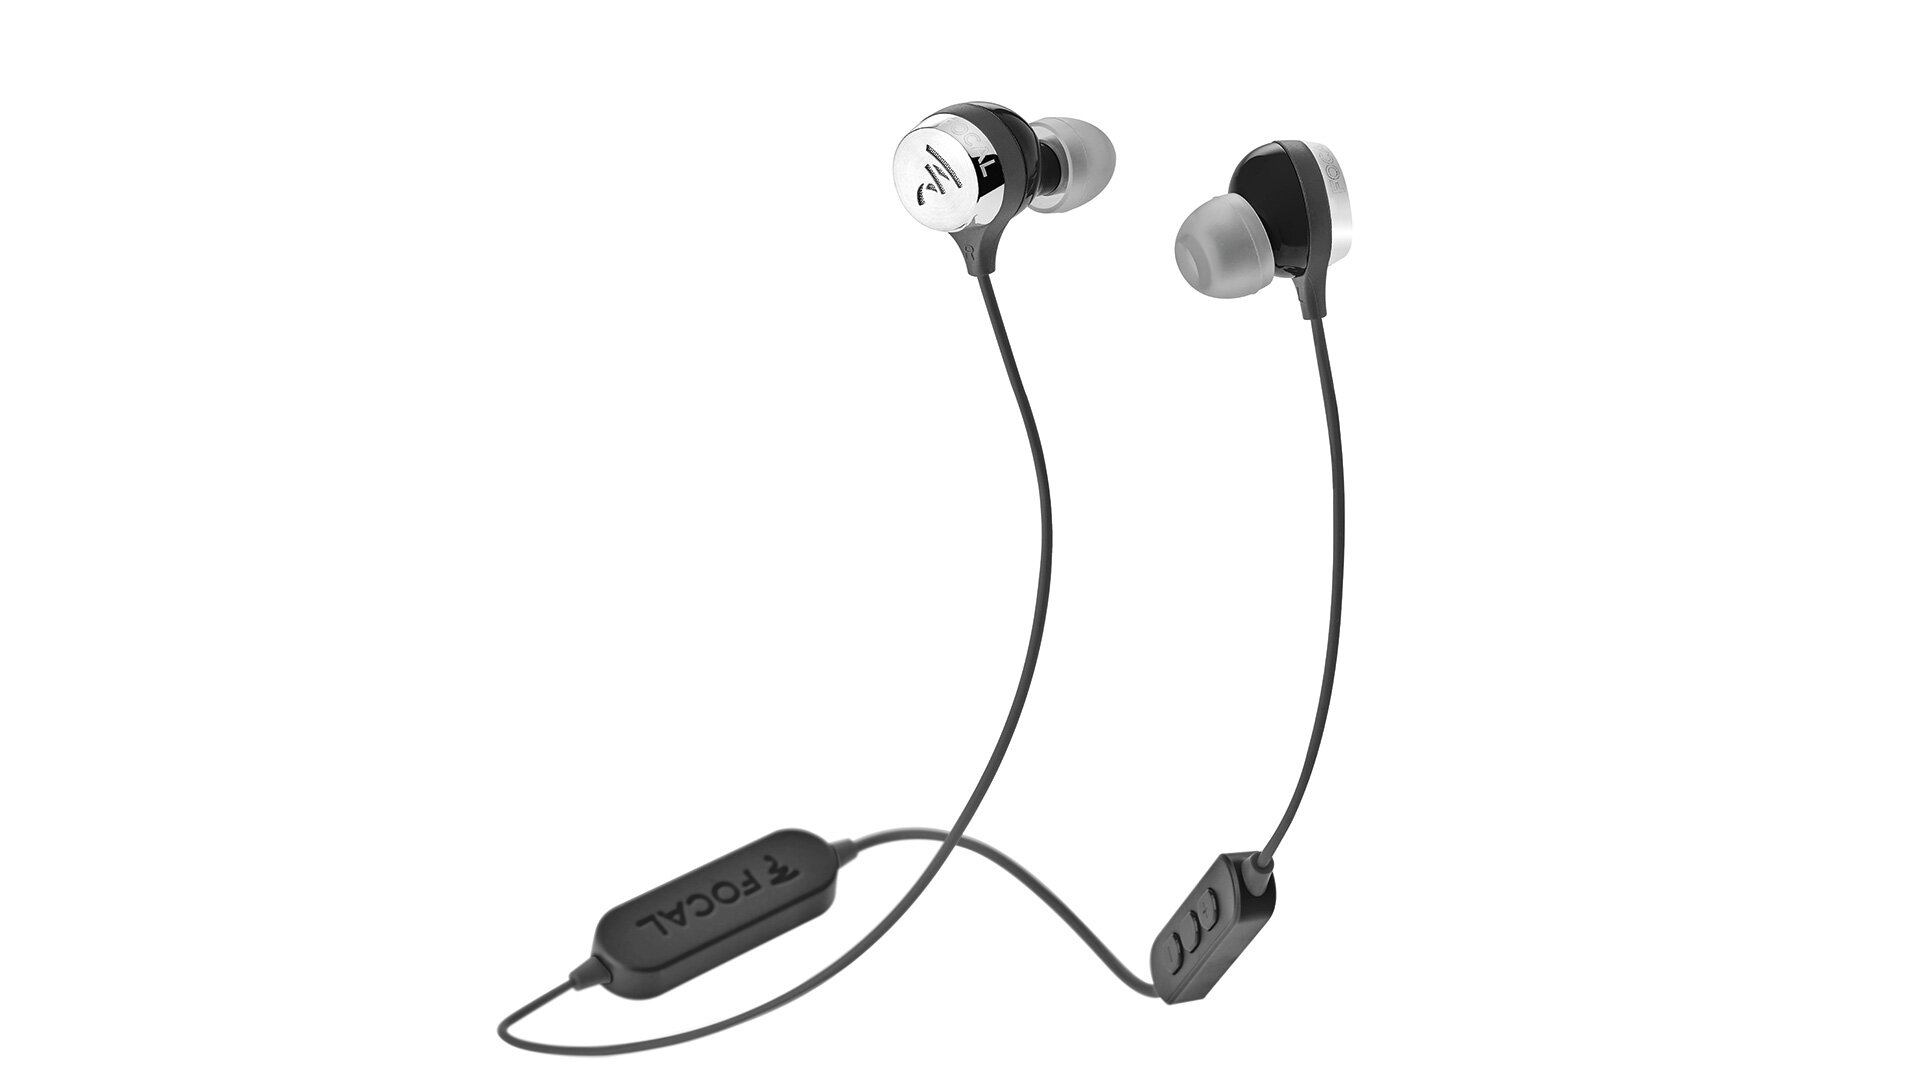 Focal Sphear Wireless In-ear Headphone Bud in Winnipeg at Creative Audio